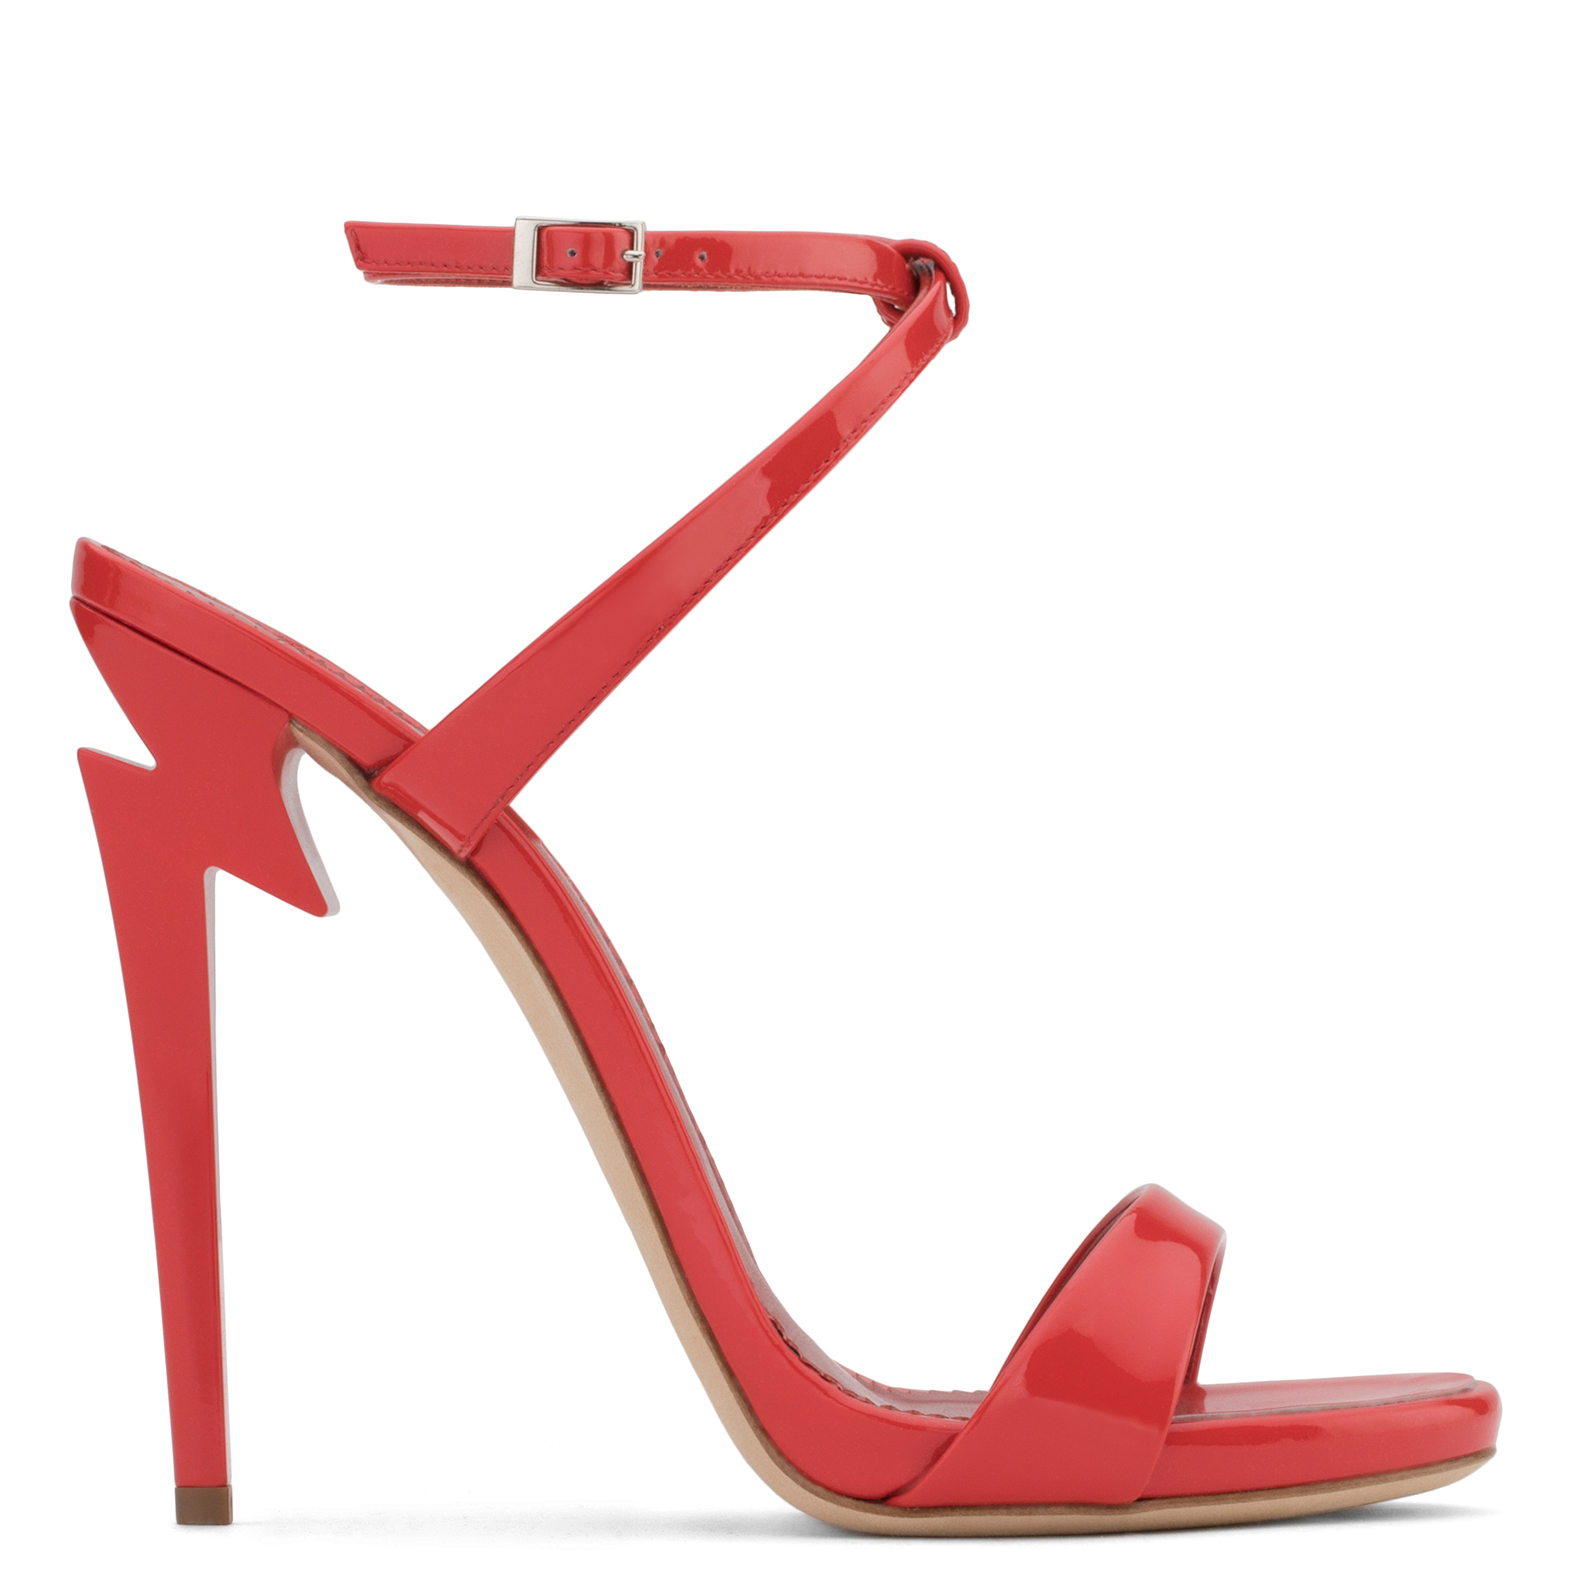 Cardi B shoes | Women's designer shoes by Giuseppe Zanotti